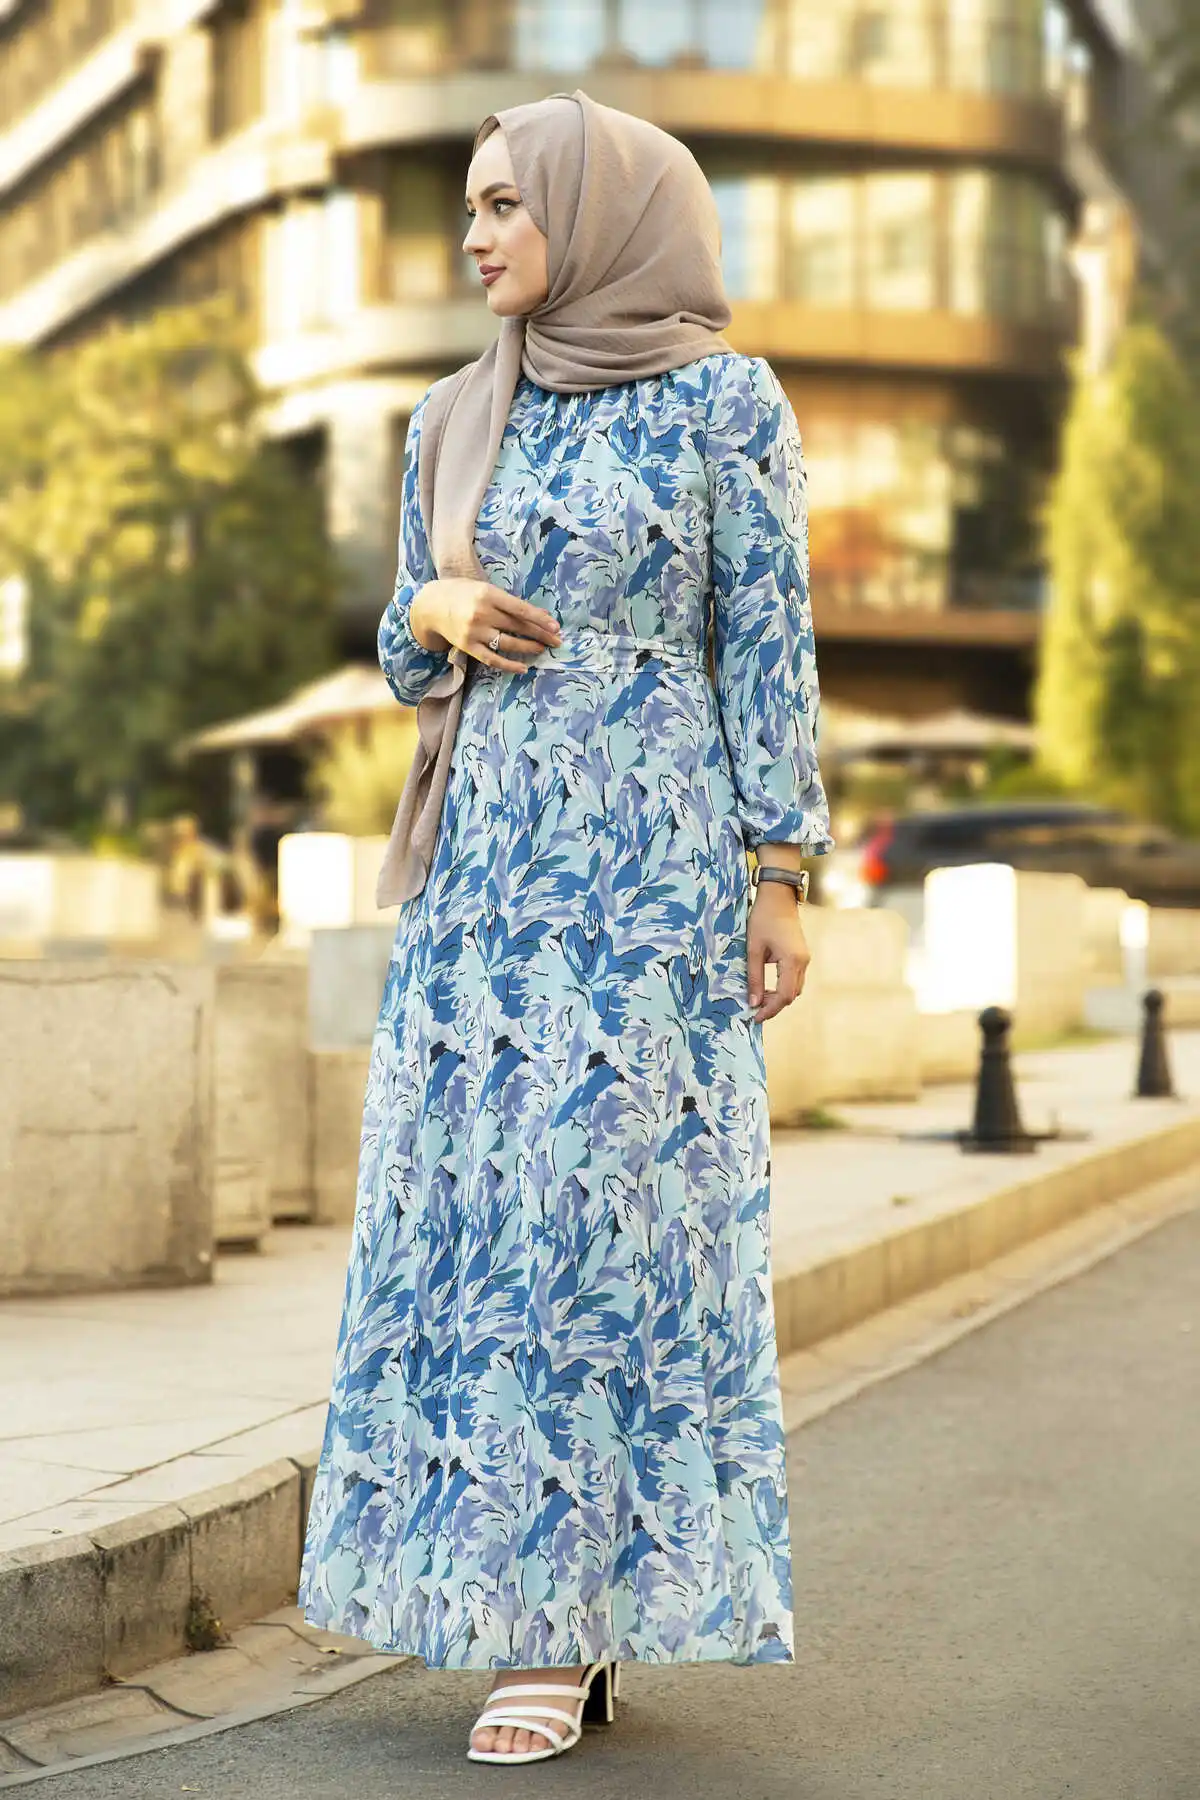 pea number aesthetic Rochie Rochii Femei 2021 Caftan Abaya Mult Musulman Rochii De Seara Hijab  Abayas Turc Hijab Petrecere Casual Femei Haine cumpara online ~  Tradițională și culturală purta < Guar.ro